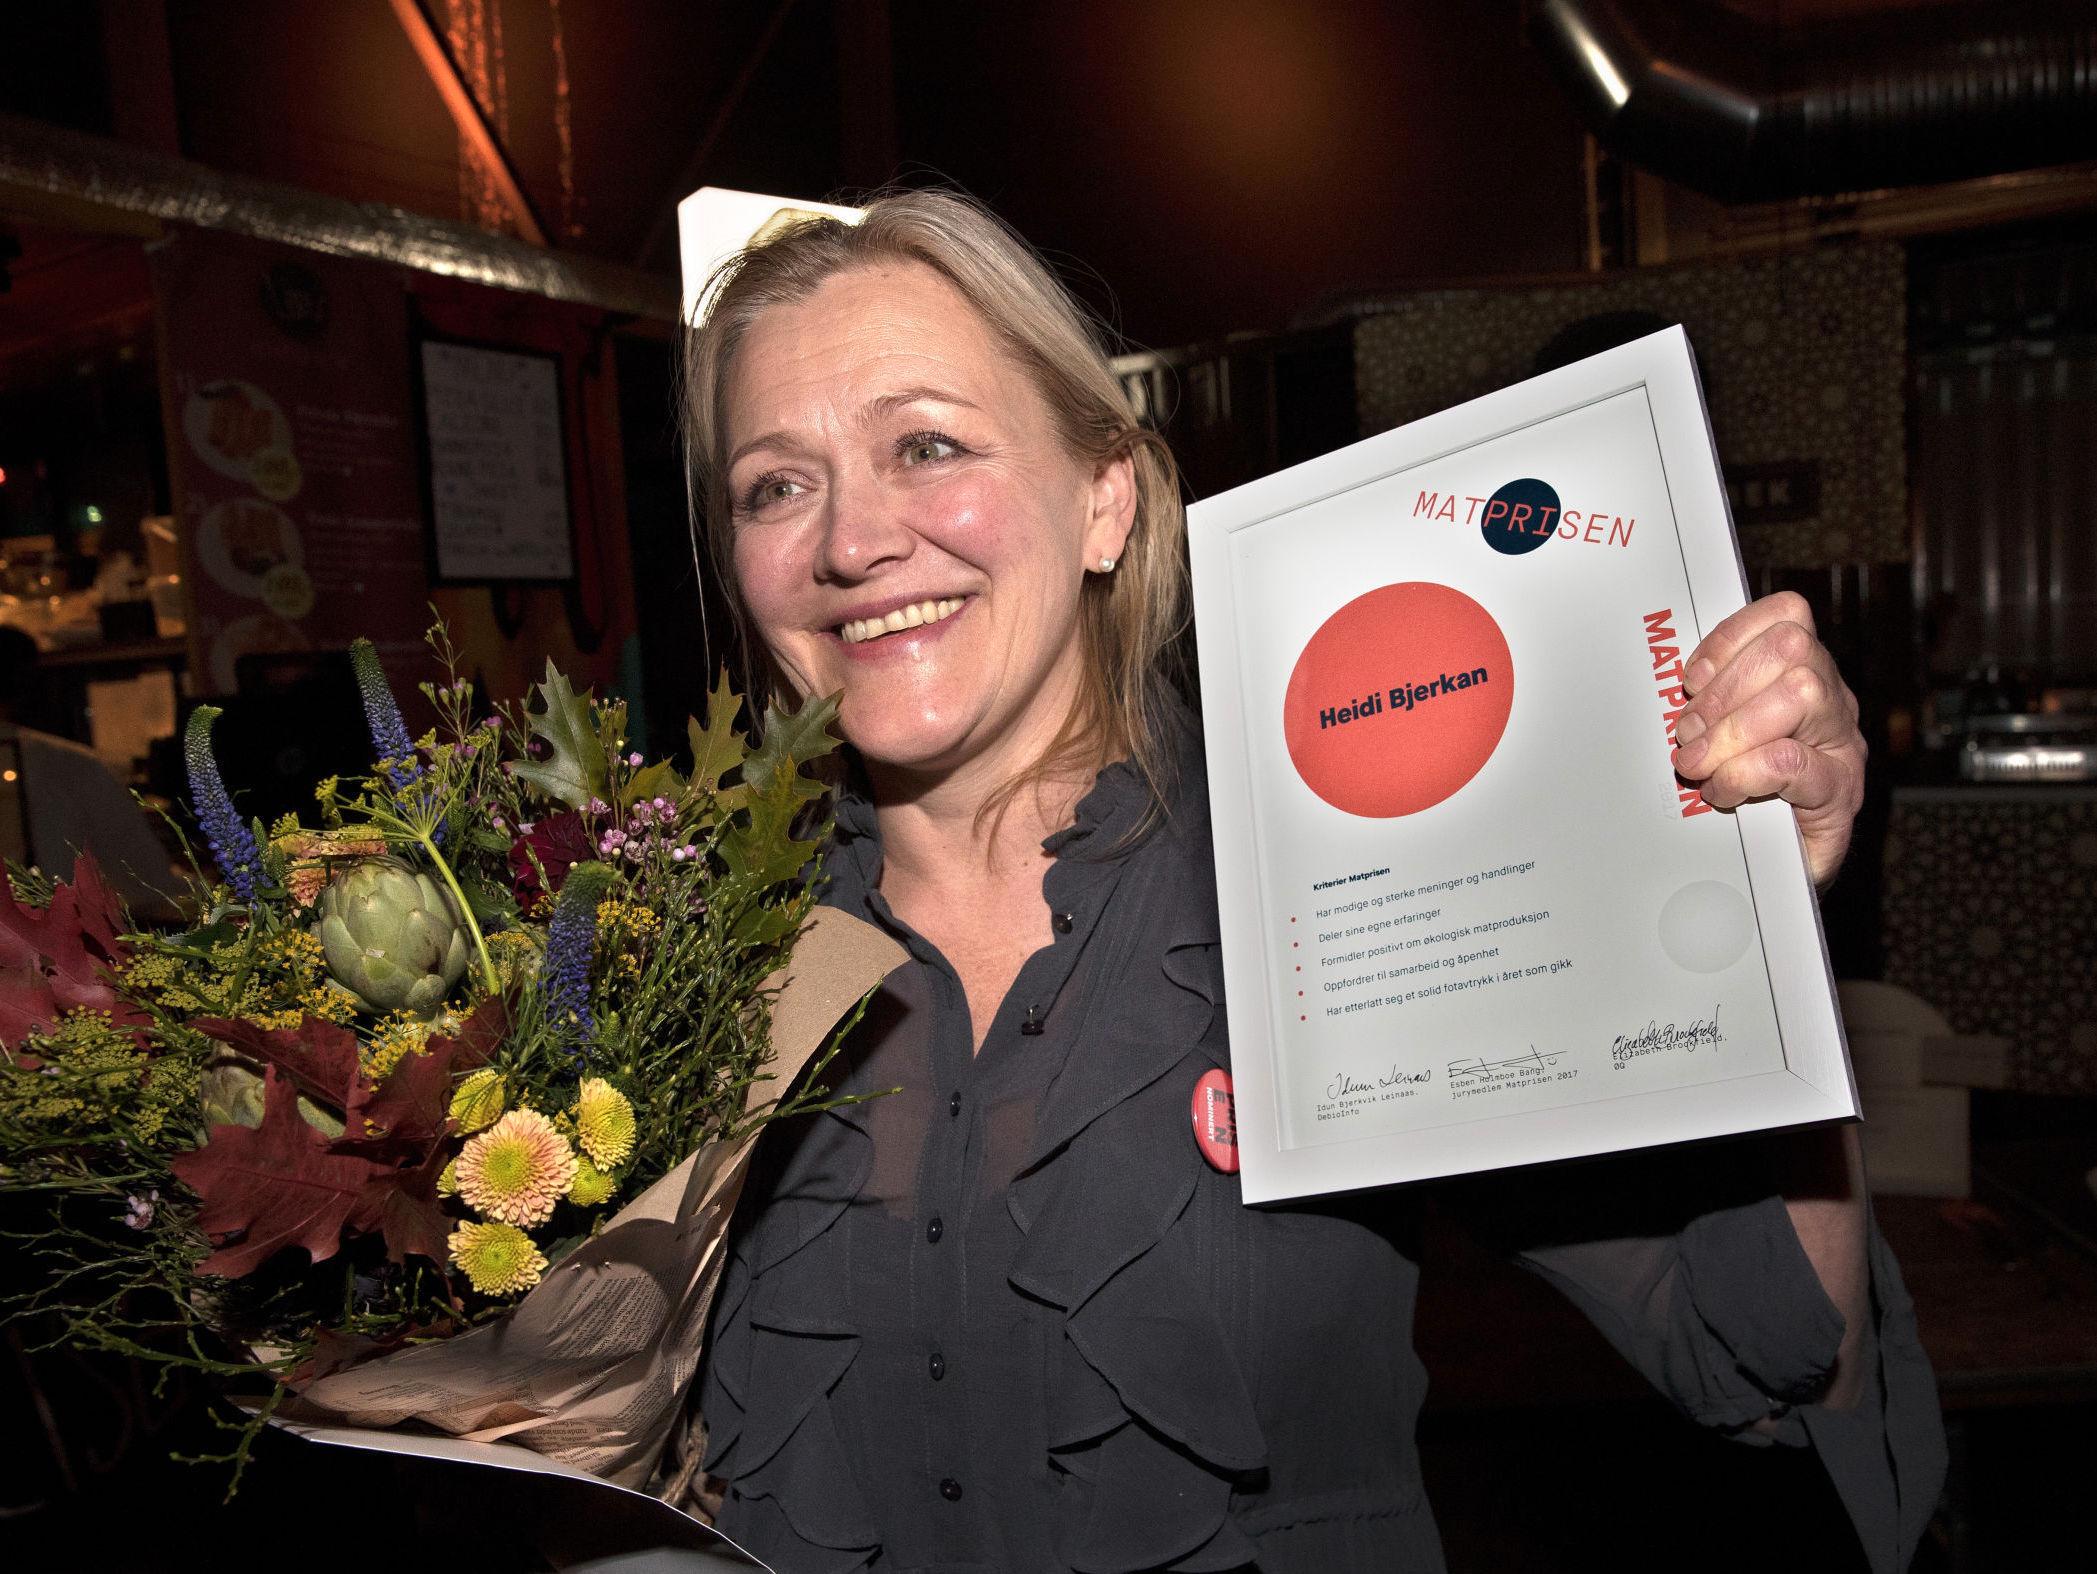 VUNNET FØR: I fjor vant Heidi Bjerkan Matprisen. Maaemo-sjef Esben Holmboe Bang omtalte henne da som en av kokkene han ser mest opp til. Foto: Hallgeir Vågenes/VG